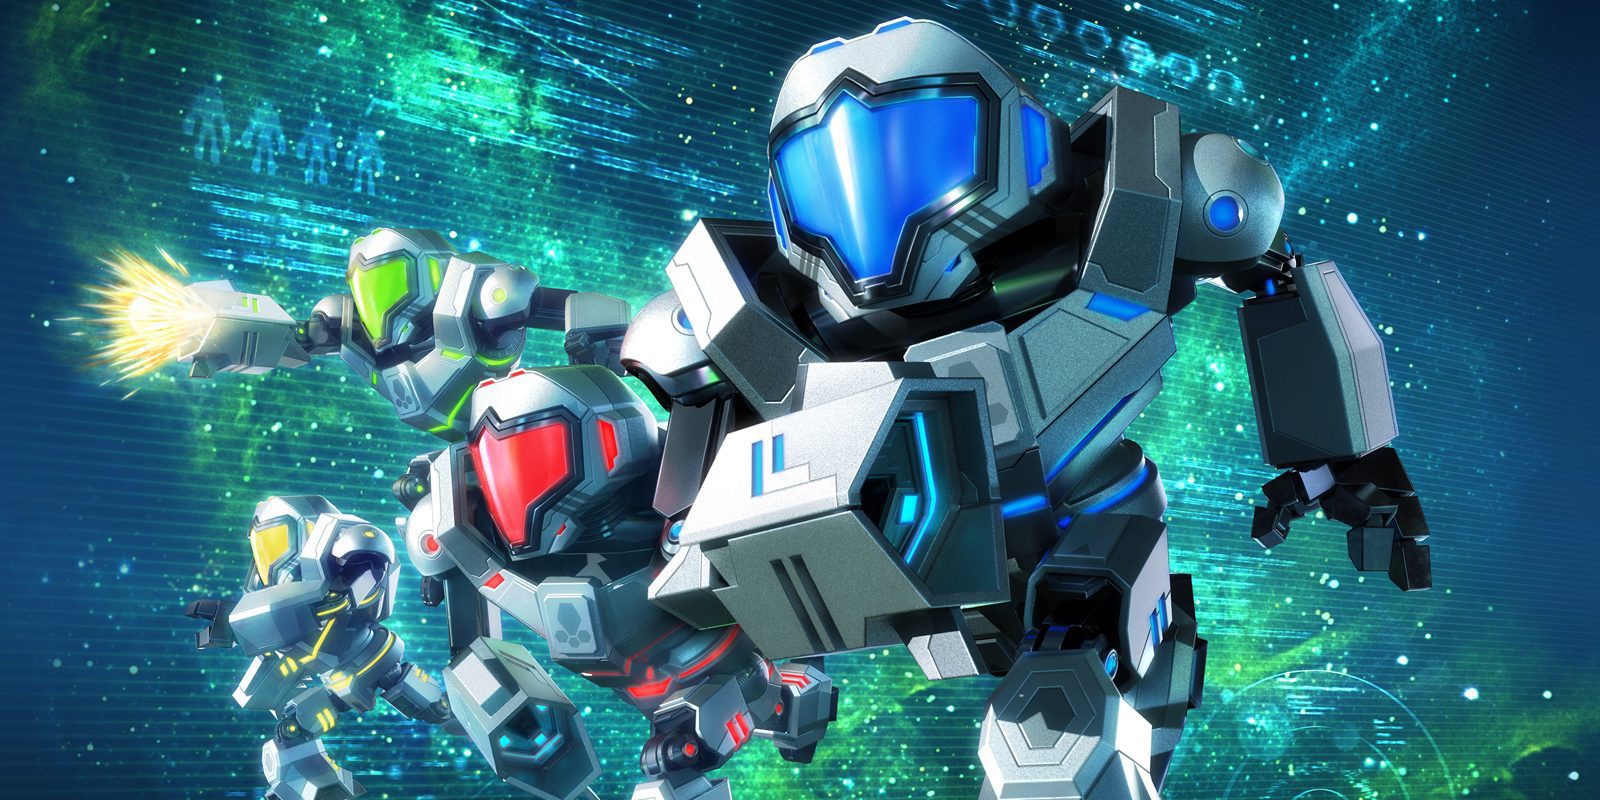 Decepcionado con 'Metroid Prime: Blast Ball', el intento de 'Rocket League' de Nintendo